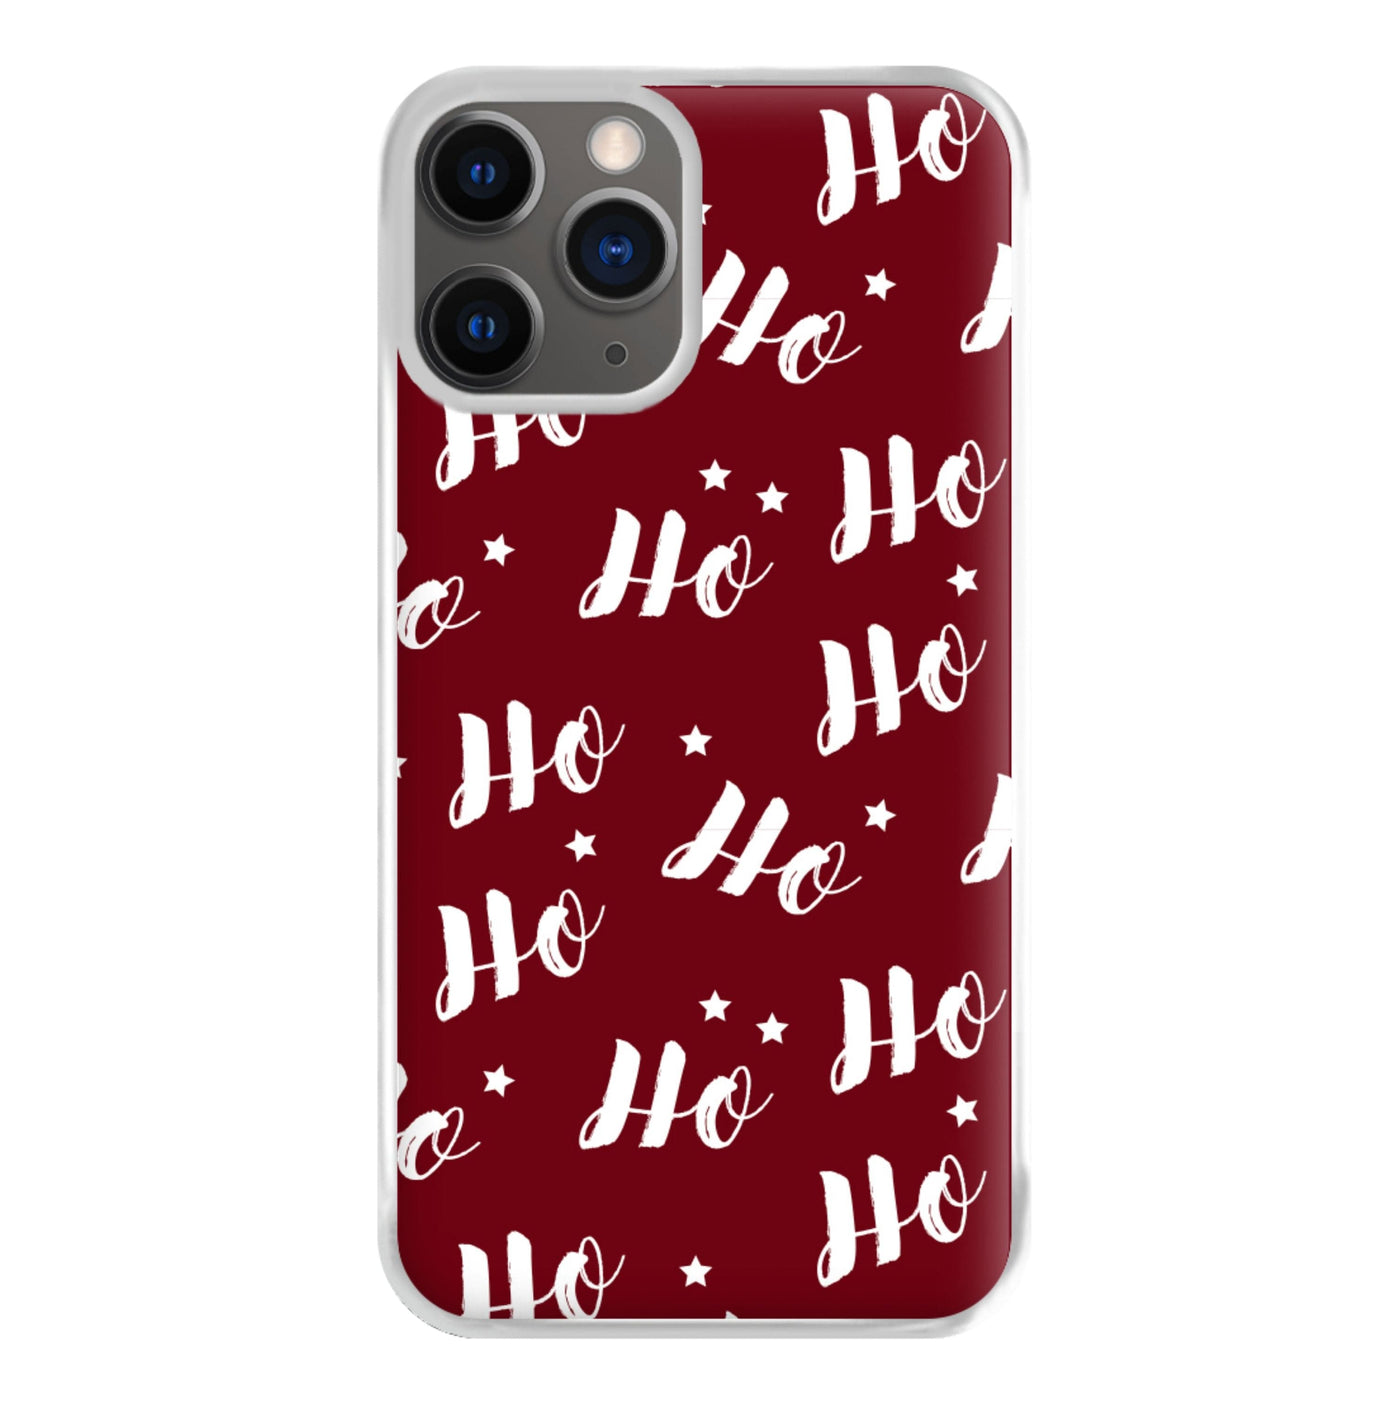 Ho Ho Ho Christmas Pattern Phone Case